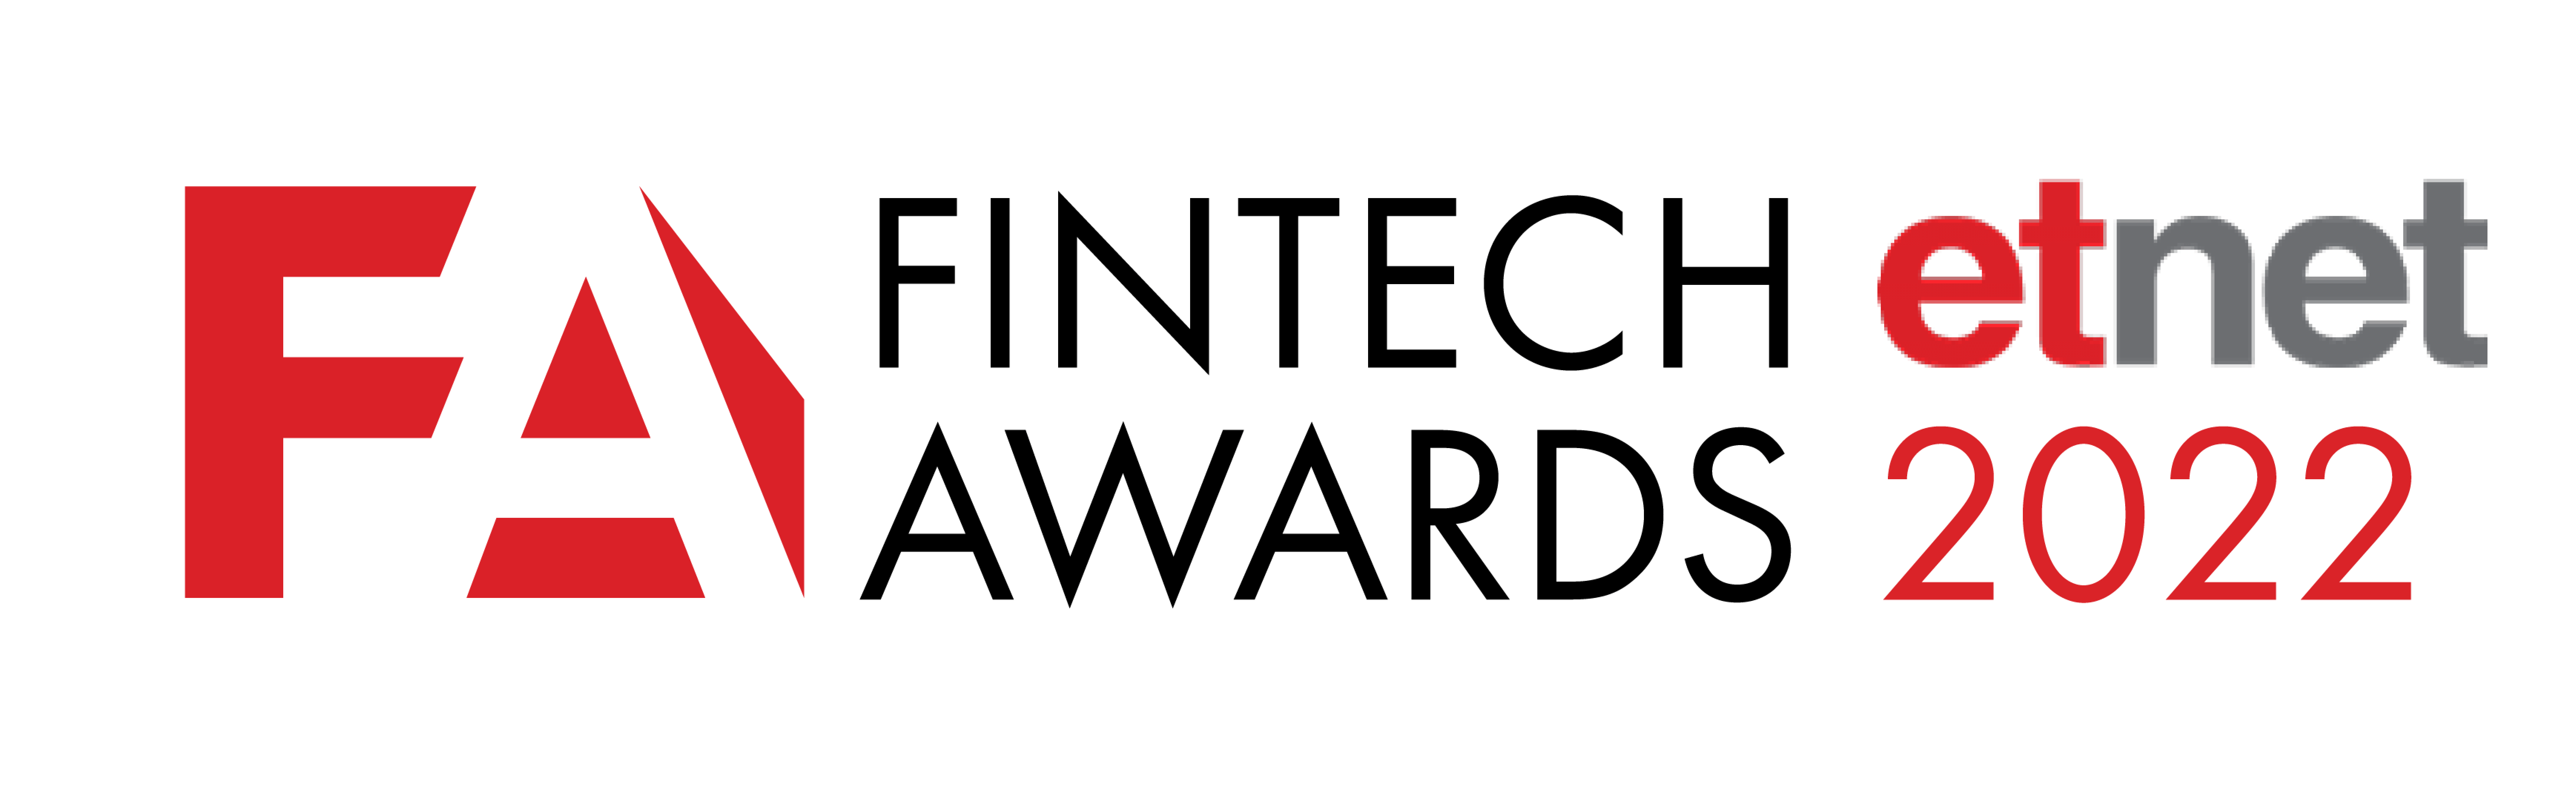 Fintech Awards 2022